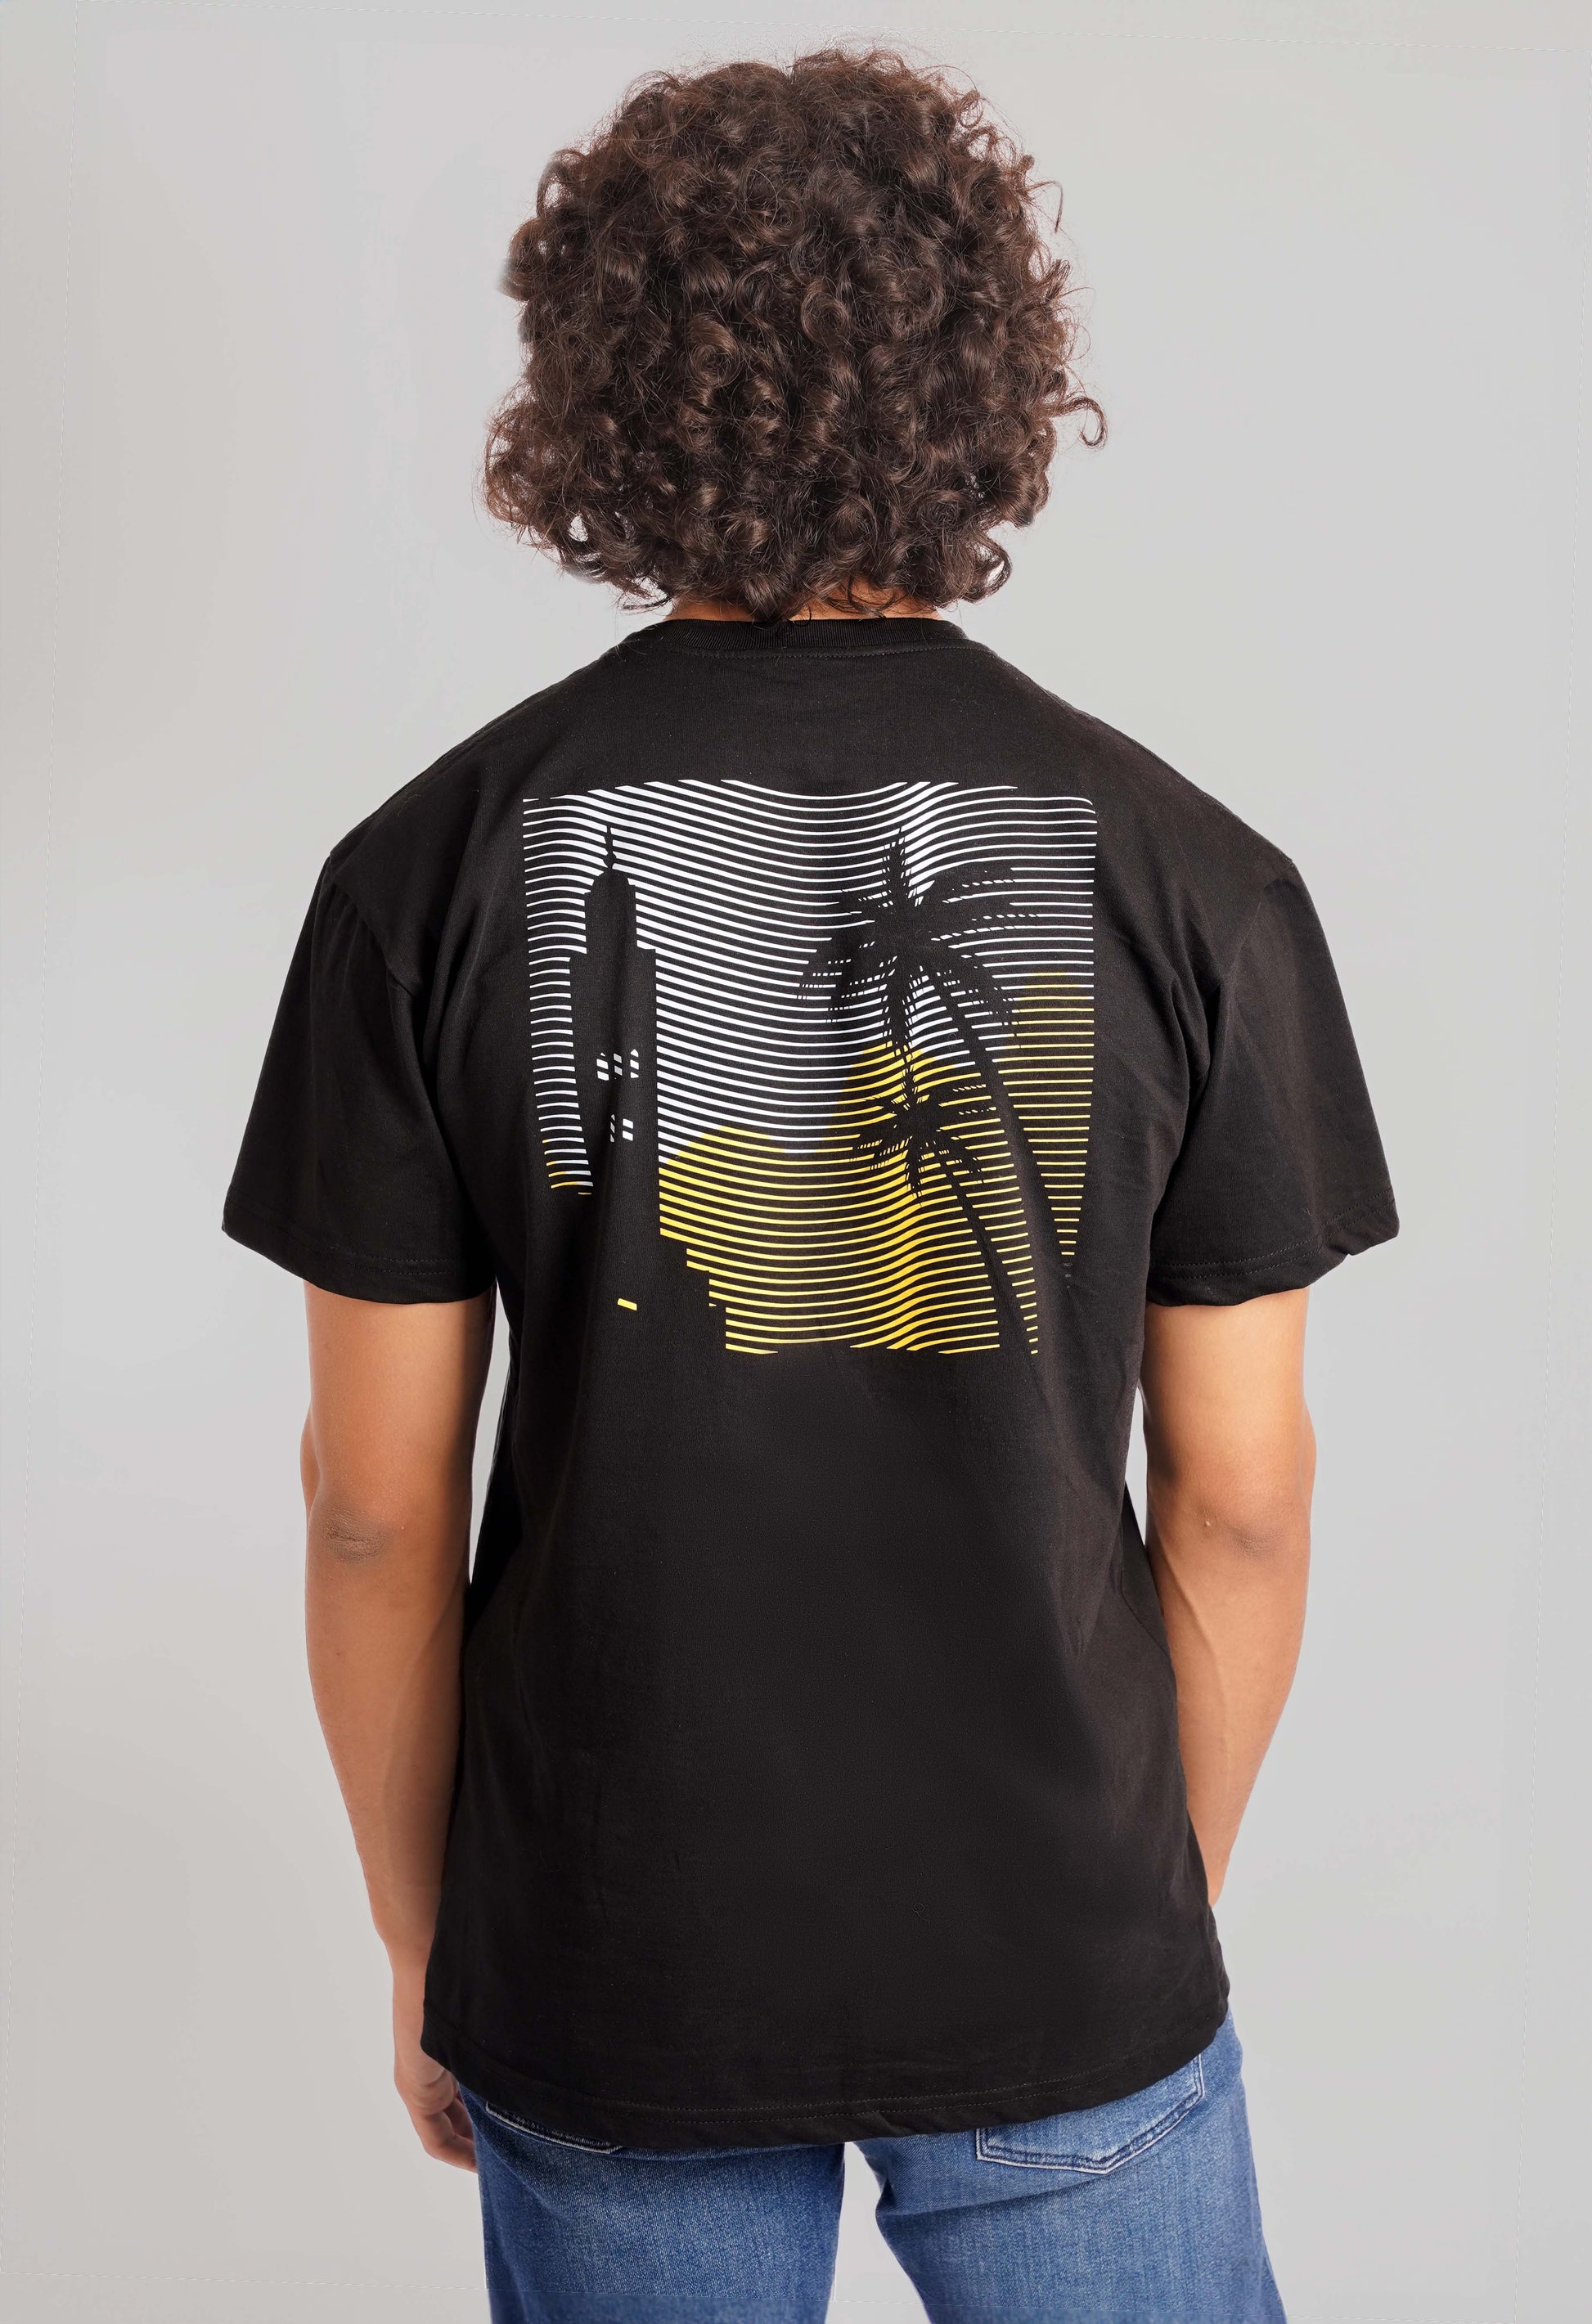 Marrakech Menara T-Shirt Men